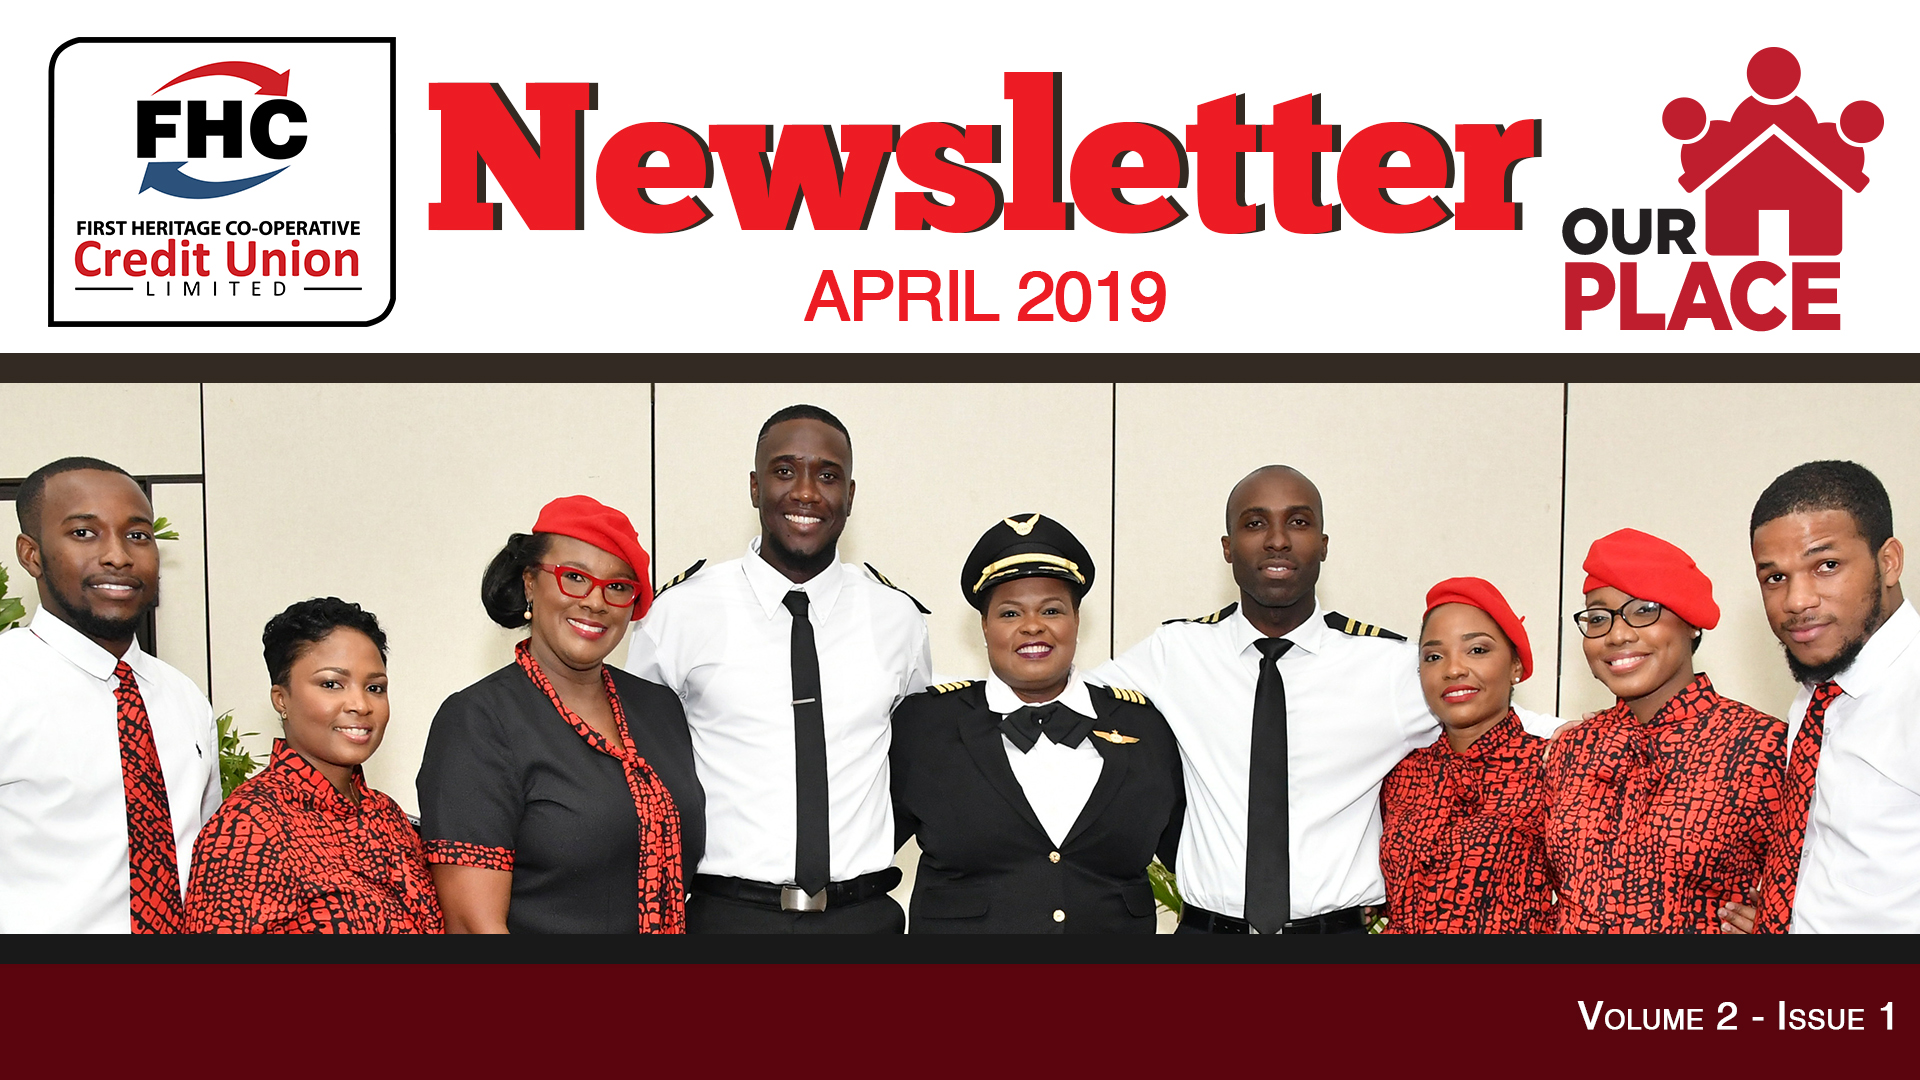 News Letter April 2019 for website